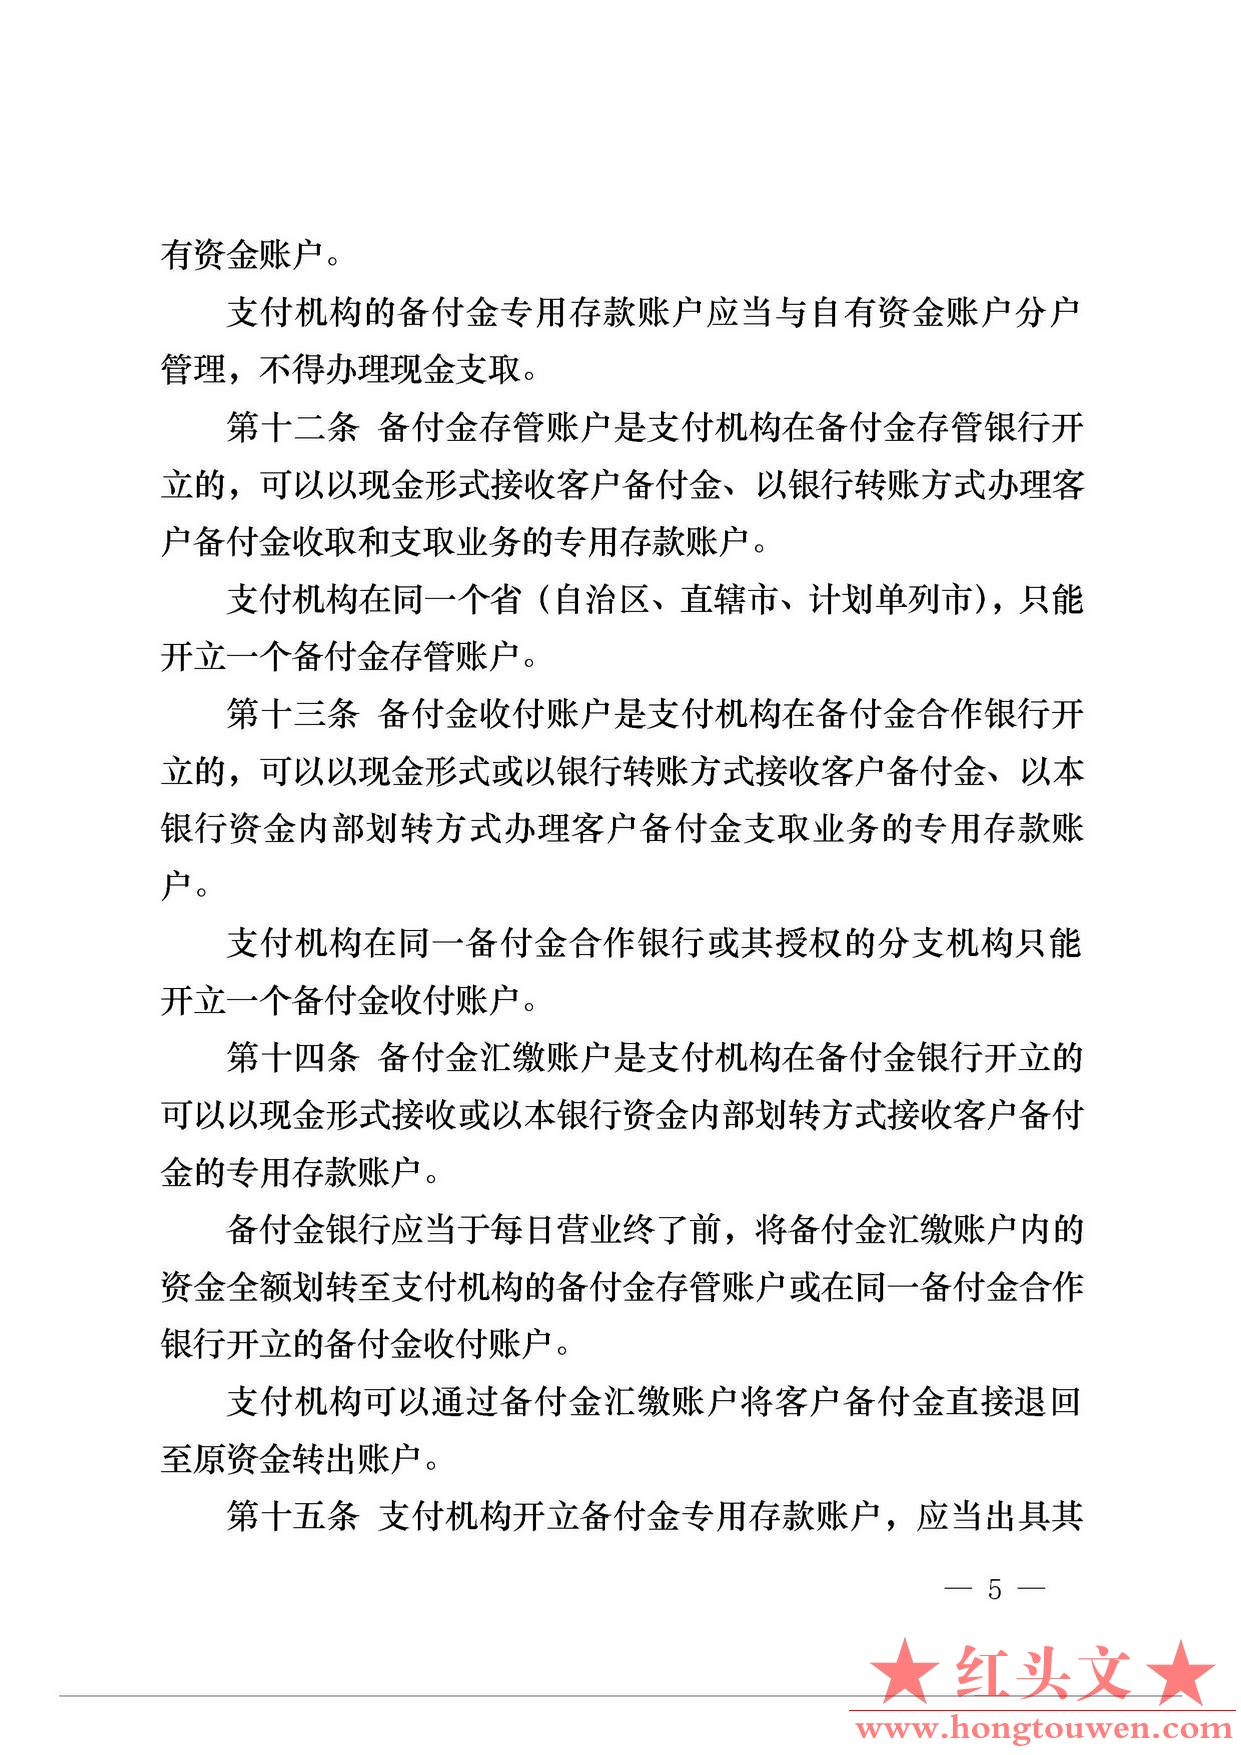 中国人民银行公告[2013]6号-《支付机构客户备付金存管办法》_页面_05.jpg.jpg